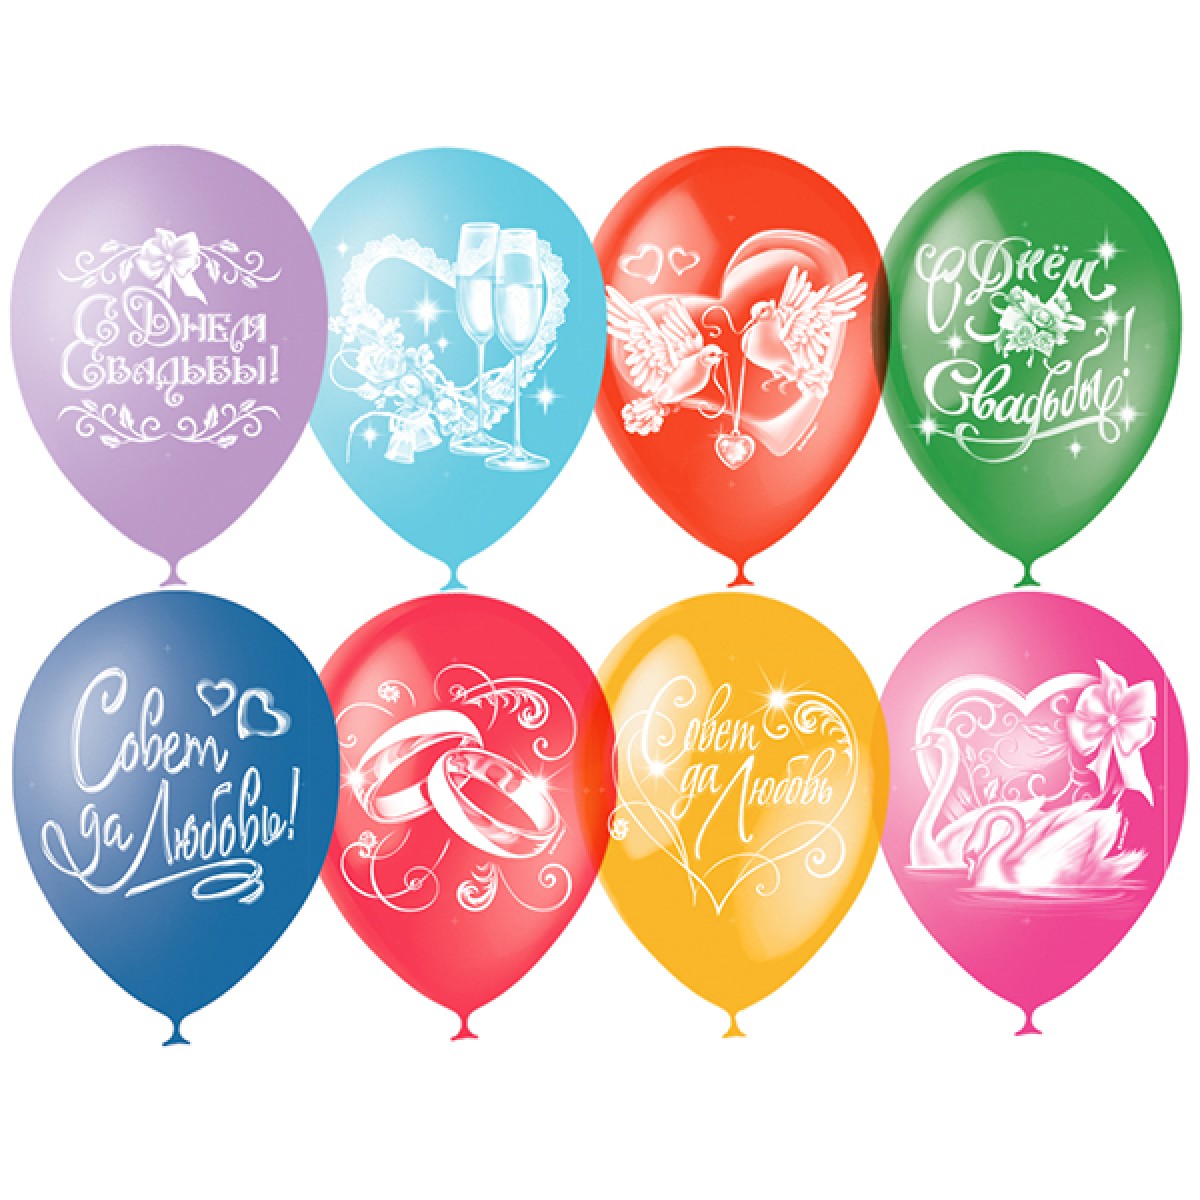 Упаковки воздушных шаров. Воздушный шарик. Шар латекс с днем свадьбы. Латексные шары. Воздушные шары с днем свадьбы.